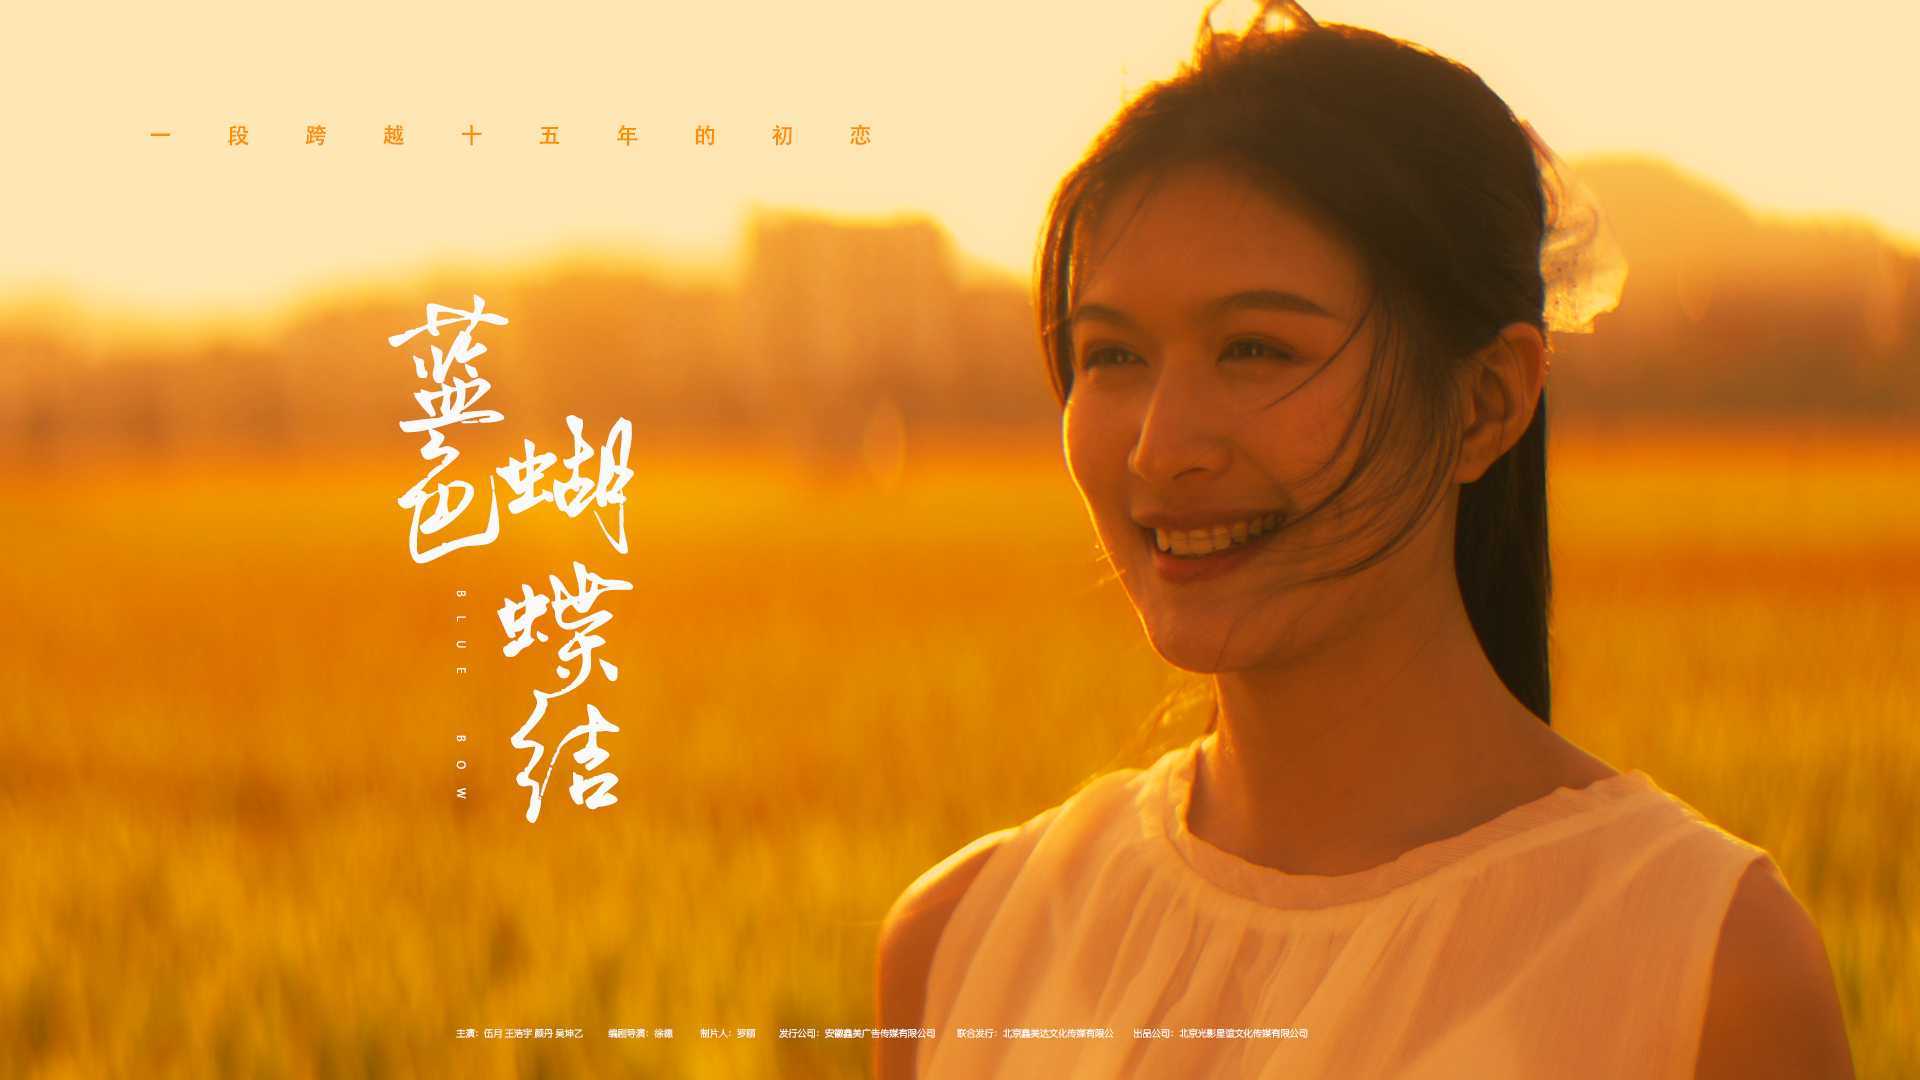 电影《蓝色蝴蝶结》纯爱剧情PV，搜狐视频-独家上映，一段跨越15年的初恋